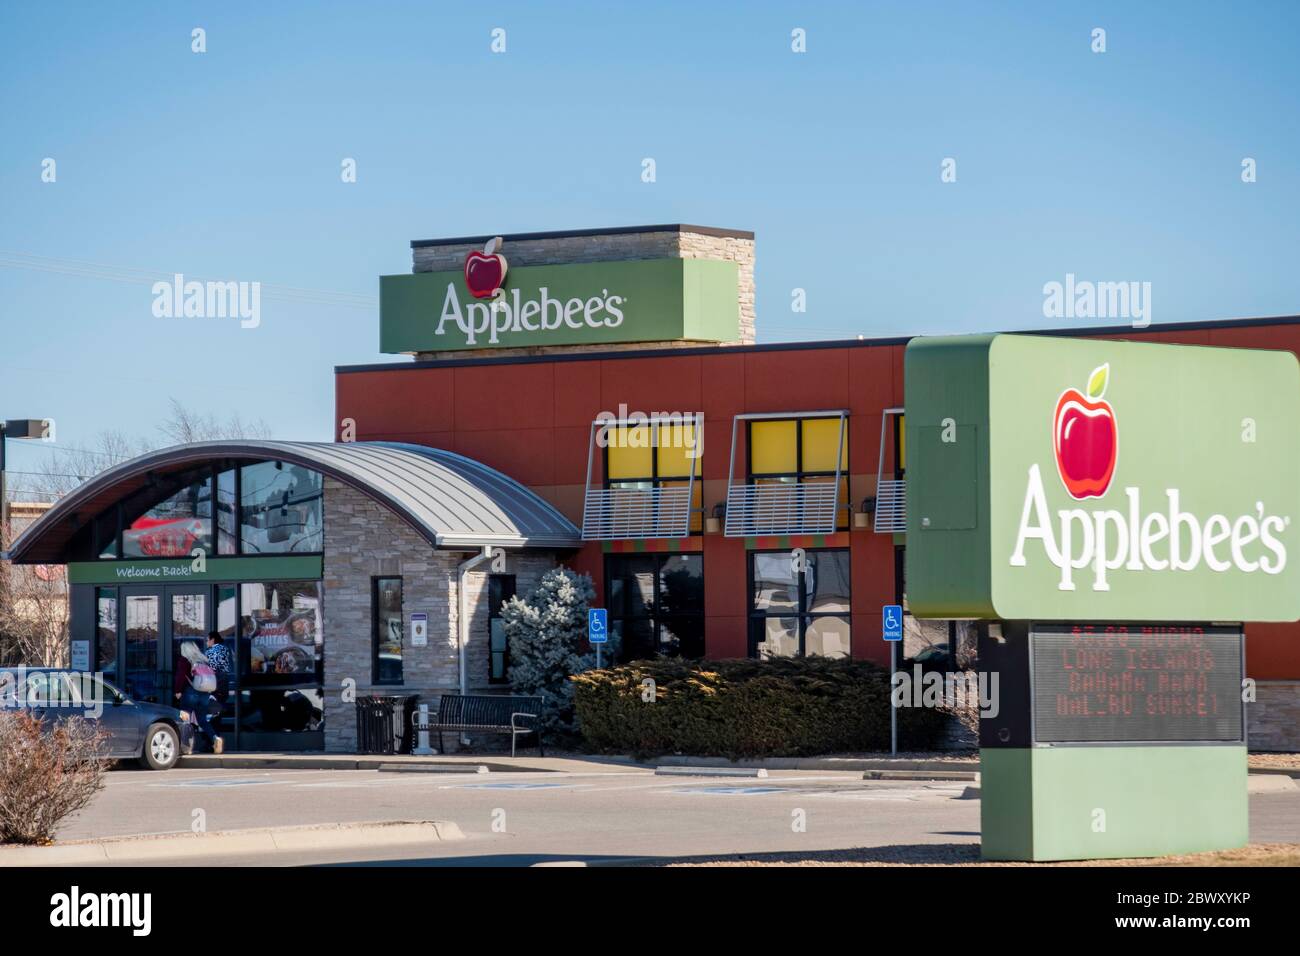 L'extérieur du restaurant Applebee's avec deux clients se préparant à entrer. Wichita, Kansas, États-Unis. Banque D'Images